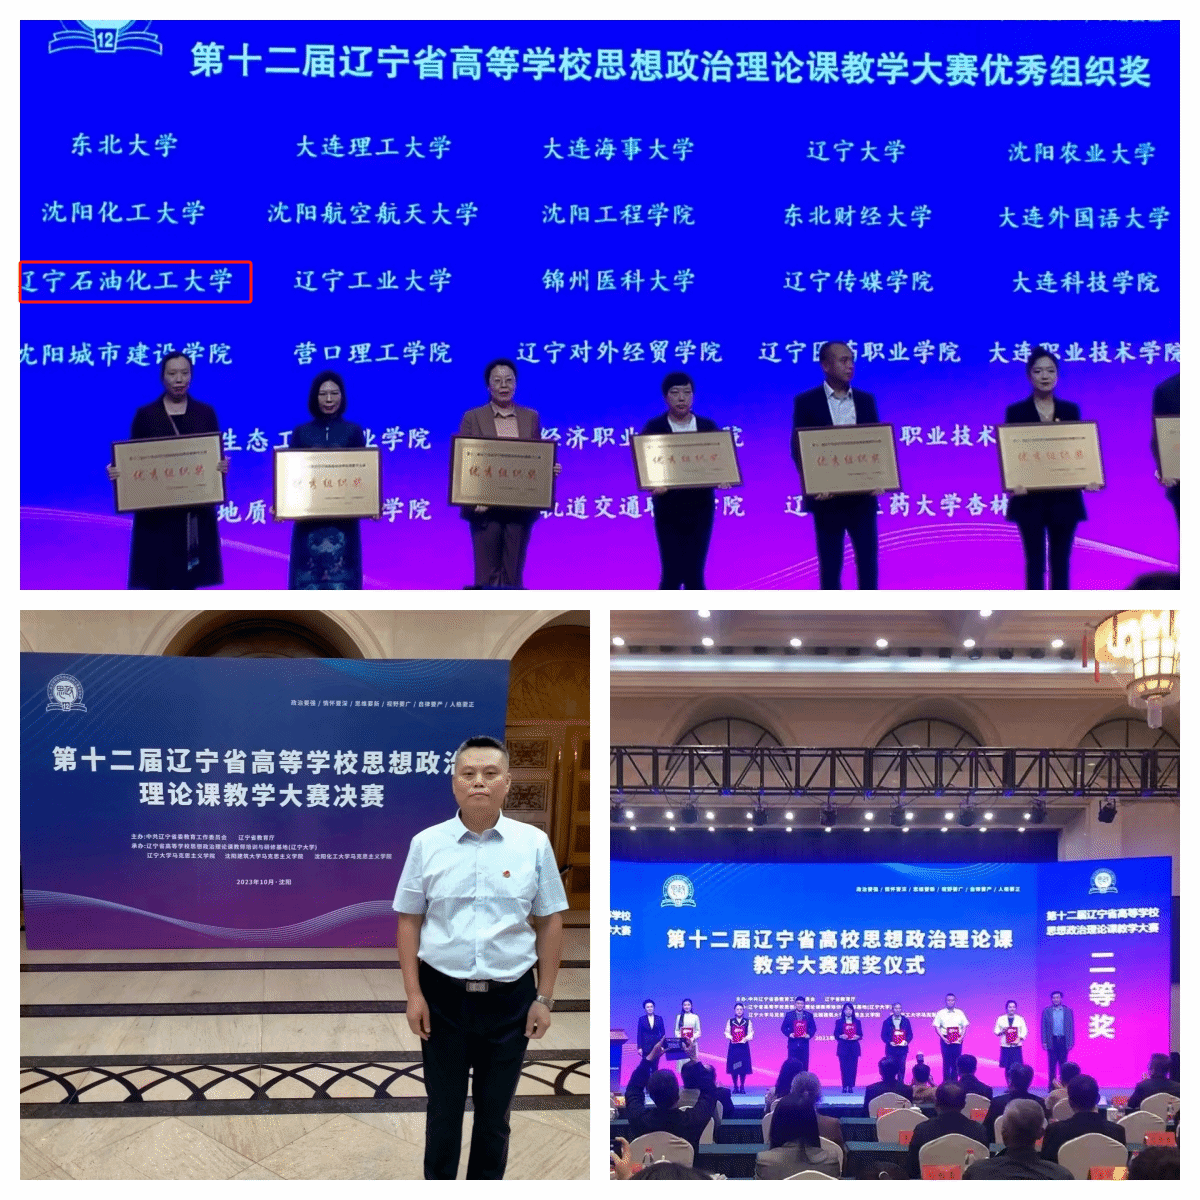 我校教师在第十二届辽宁省高校思想政治理论课教学大赛中喜获奖项